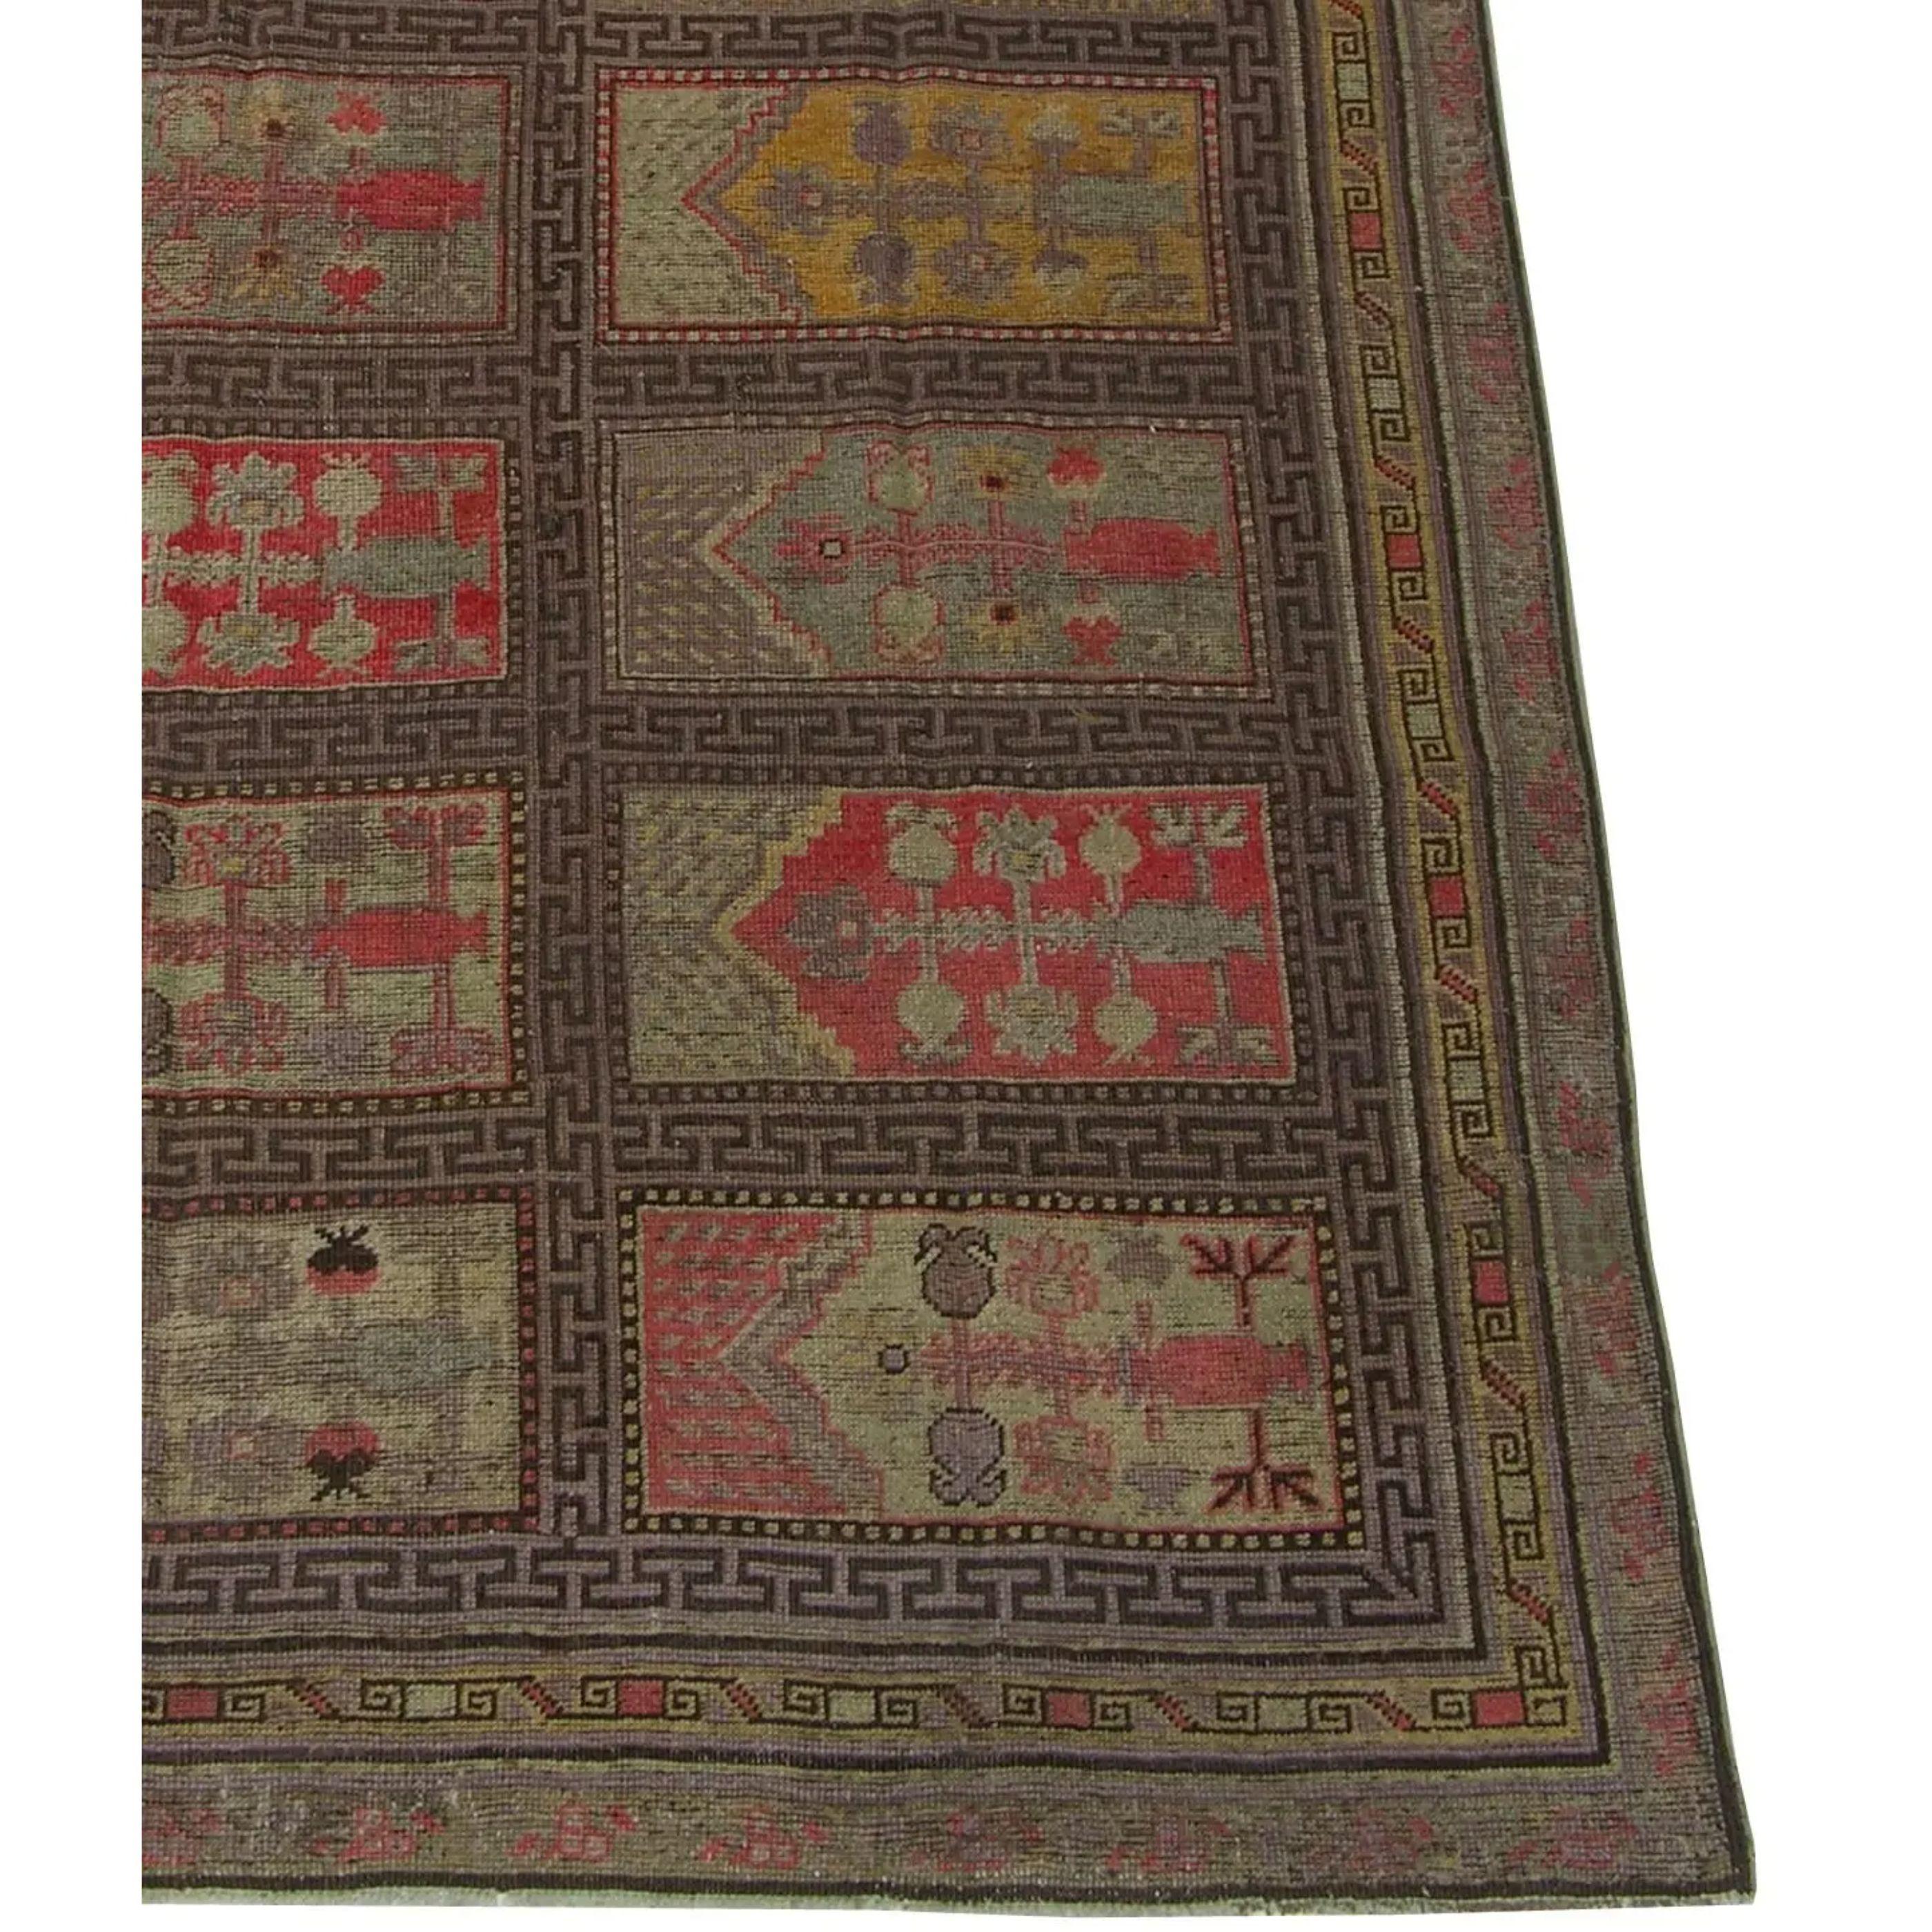 CIRCA 1900 Antiker Khotan-Samarkand-Teppich. Dieser Teppich ist ein Teppich im traditionellen Stil.